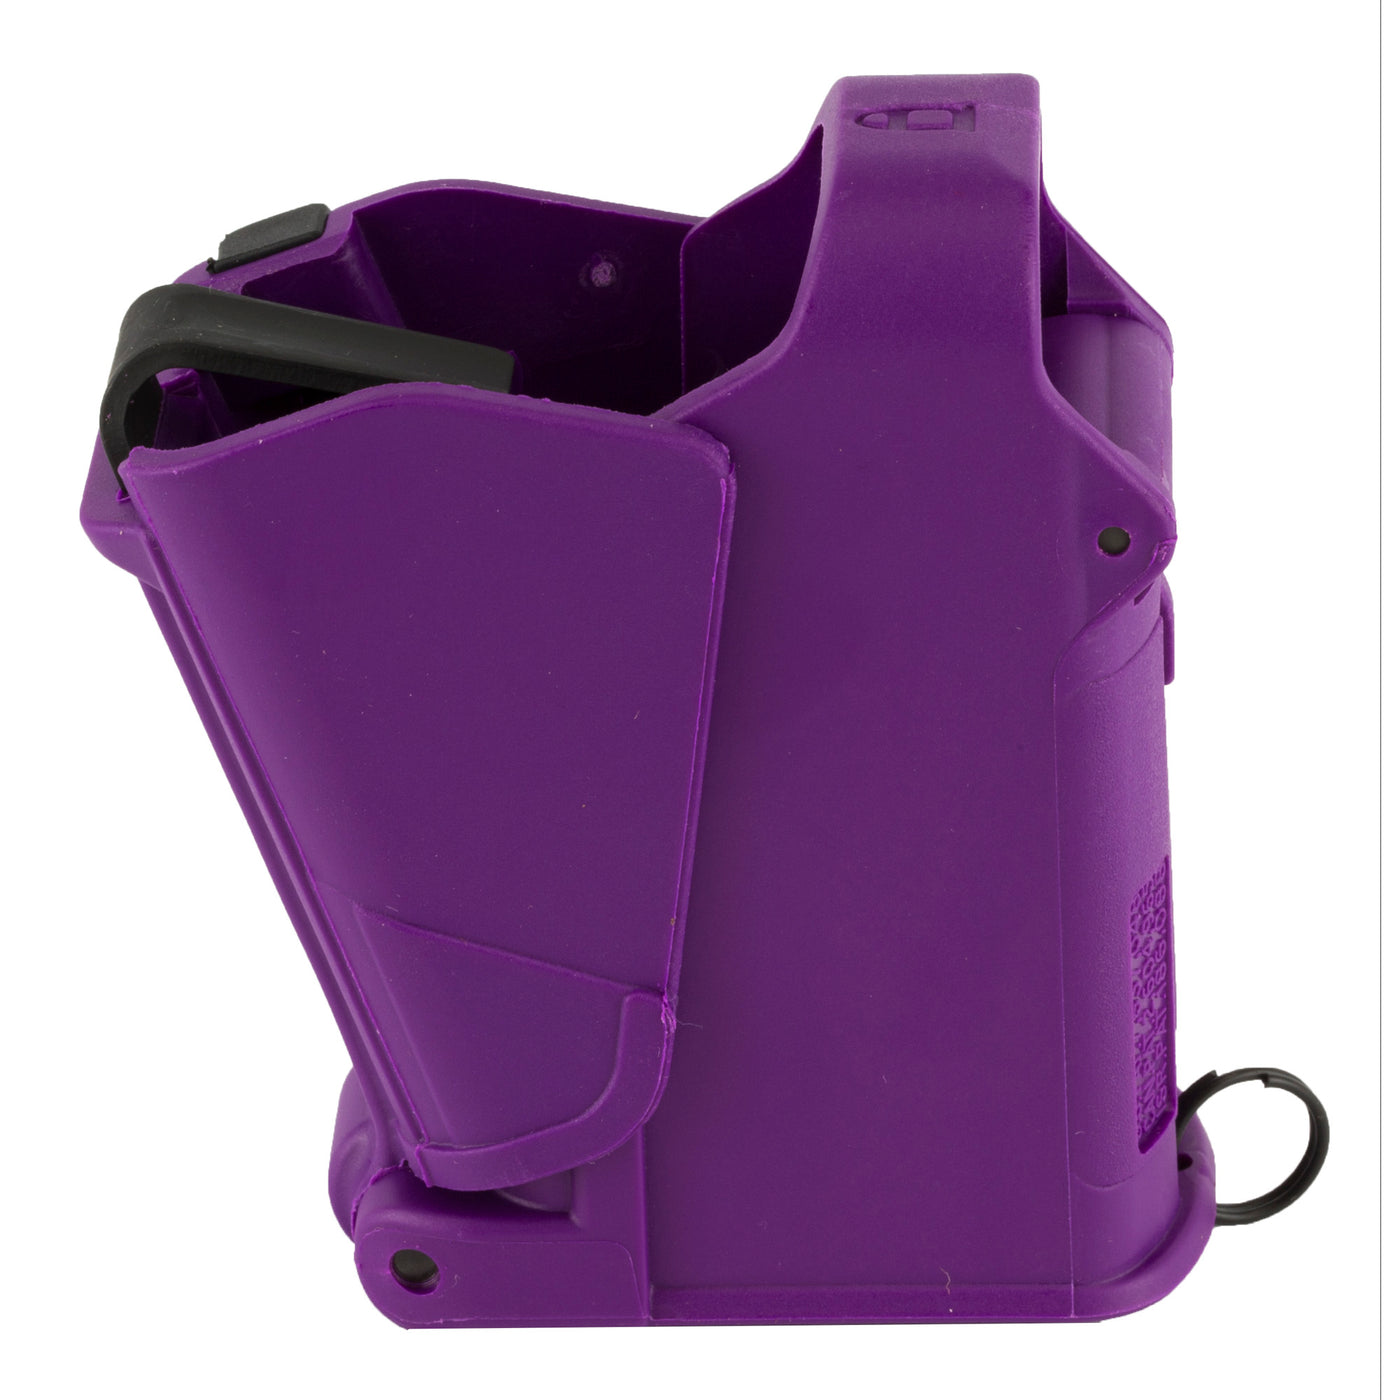 Maglula Loader Universal - Pistol Purple